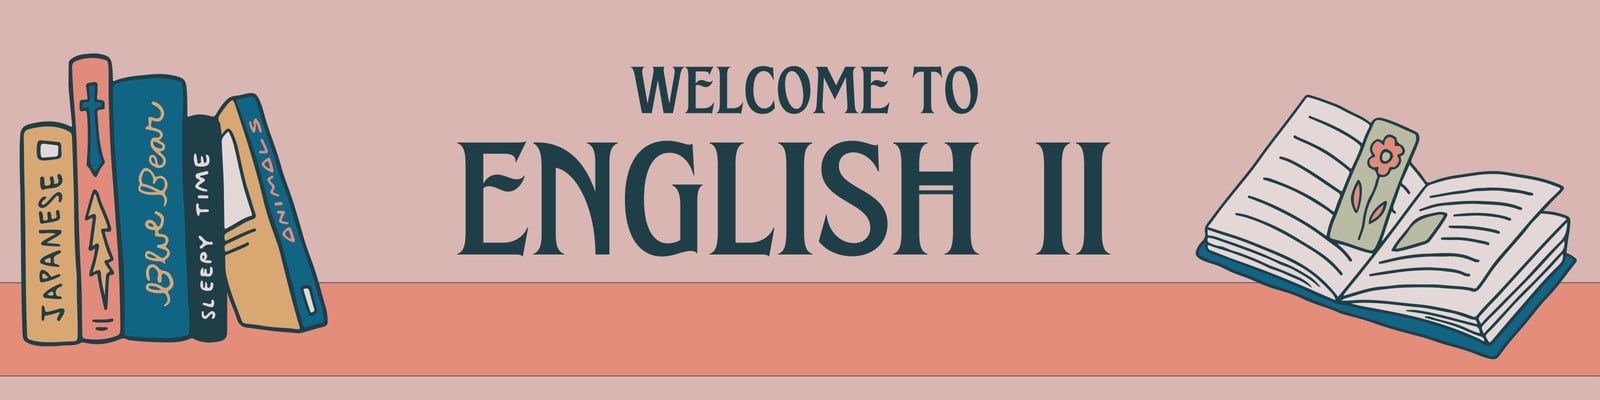 english banner